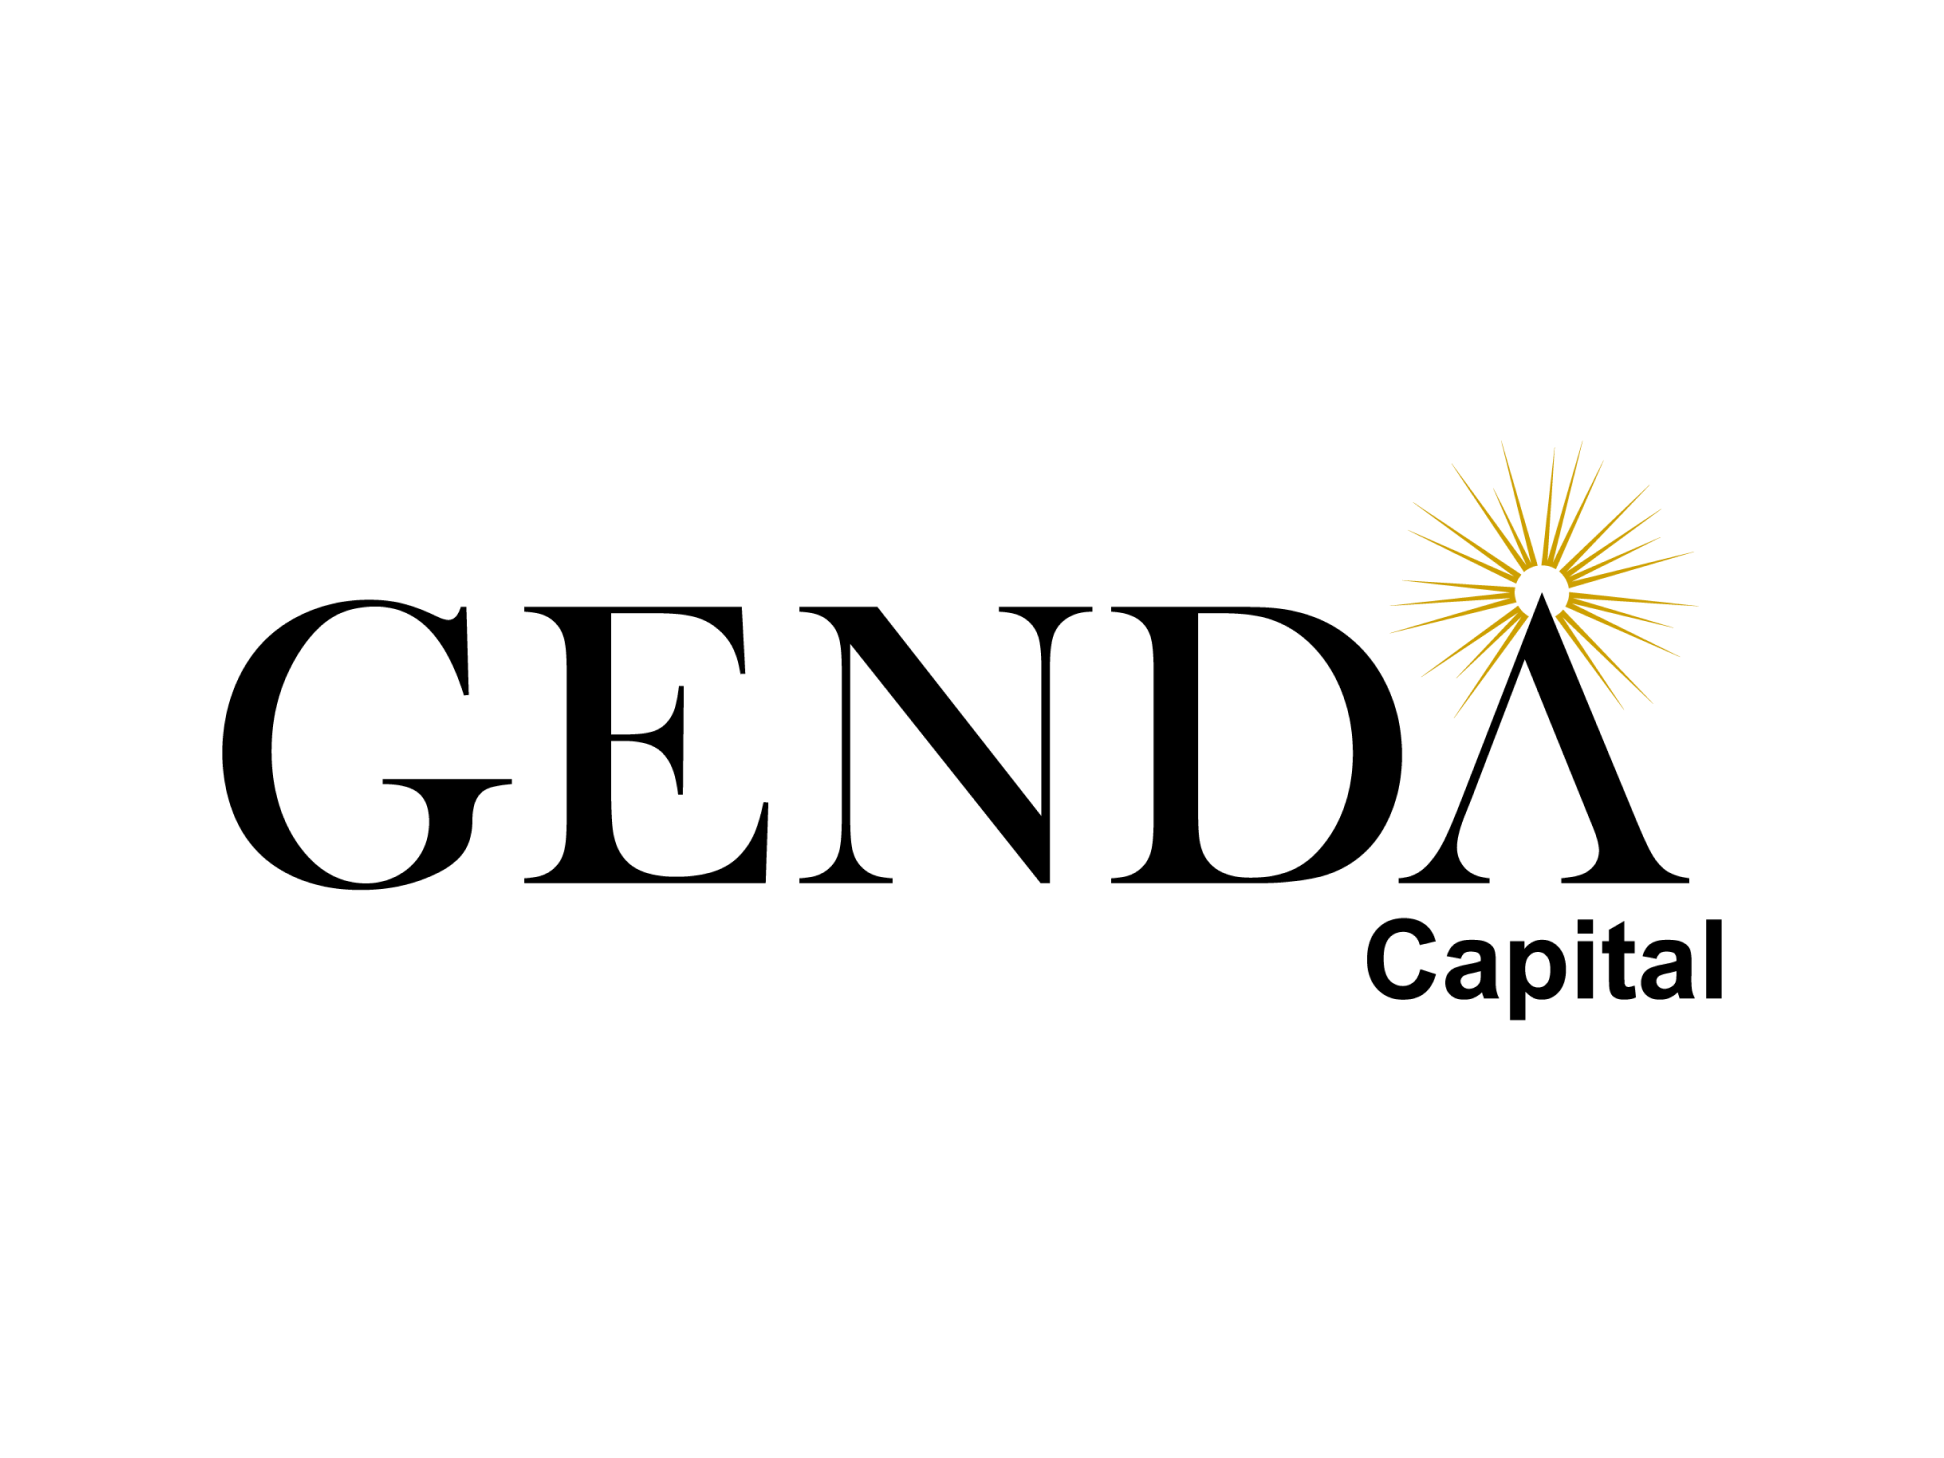 エンターテイメント領域のスタートアップを支援する「GENDA Capital 1号投資事業有限責任組合」を組成